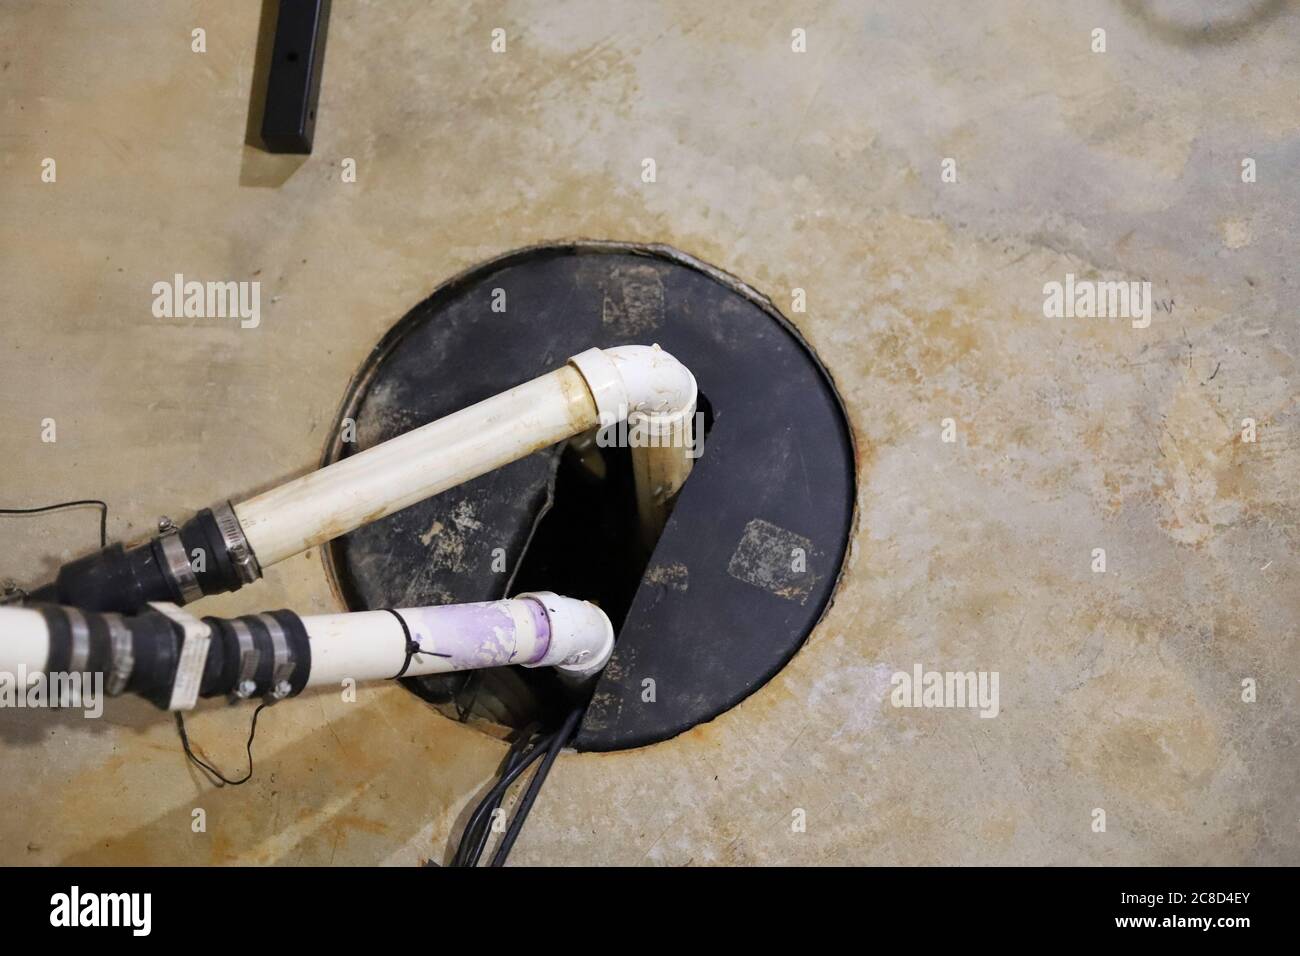 Eine Sumpfpumpe in einem Haus Keller-Sanitär-Reparatur Stockfotografie -  Alamy